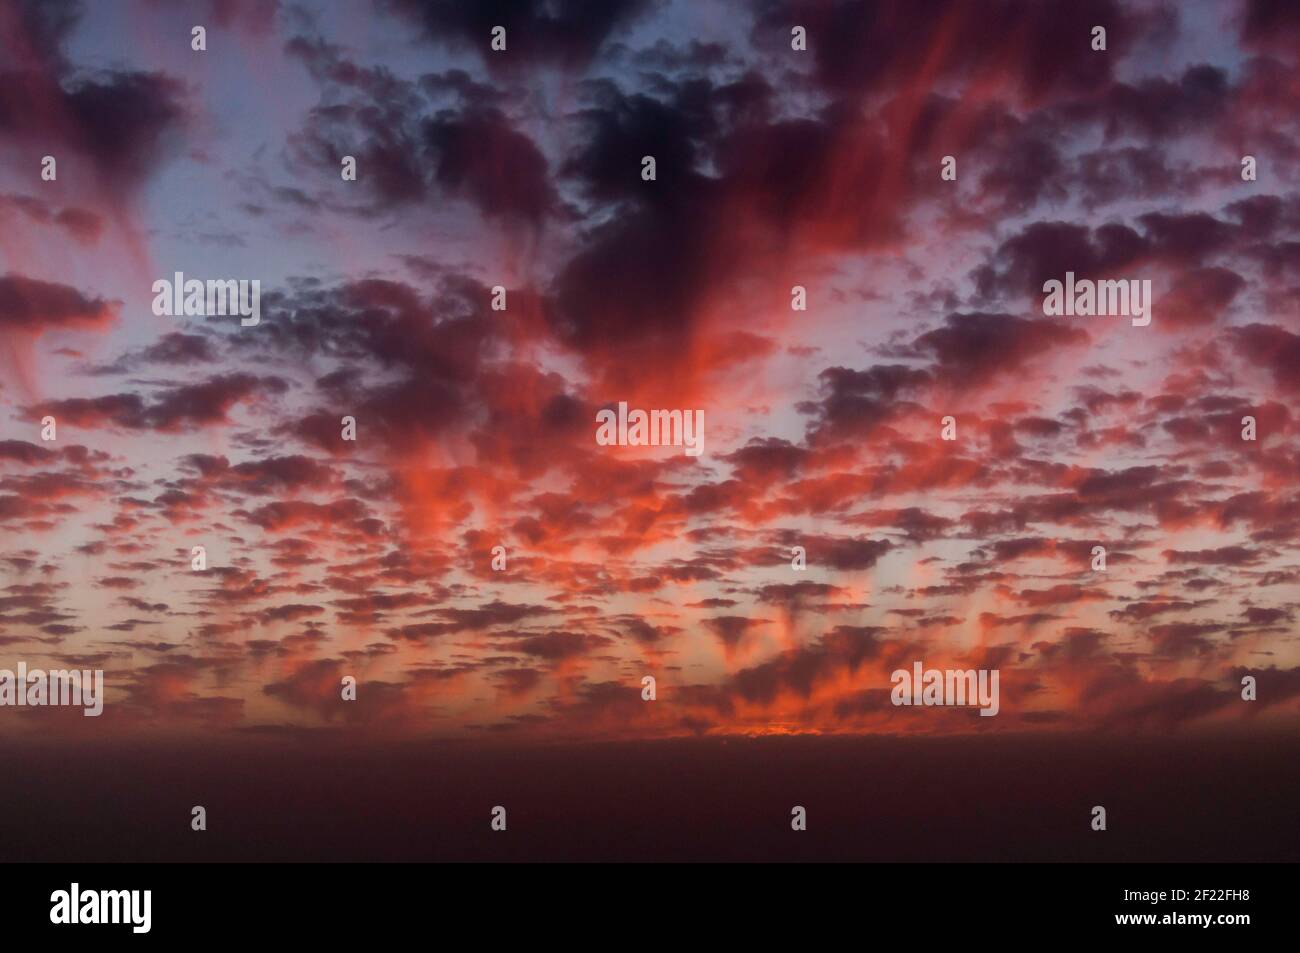 Vue fantastique d'un ciel du soir dans différentes nuances de rouge et de nombreux petits nuages Banque D'Images